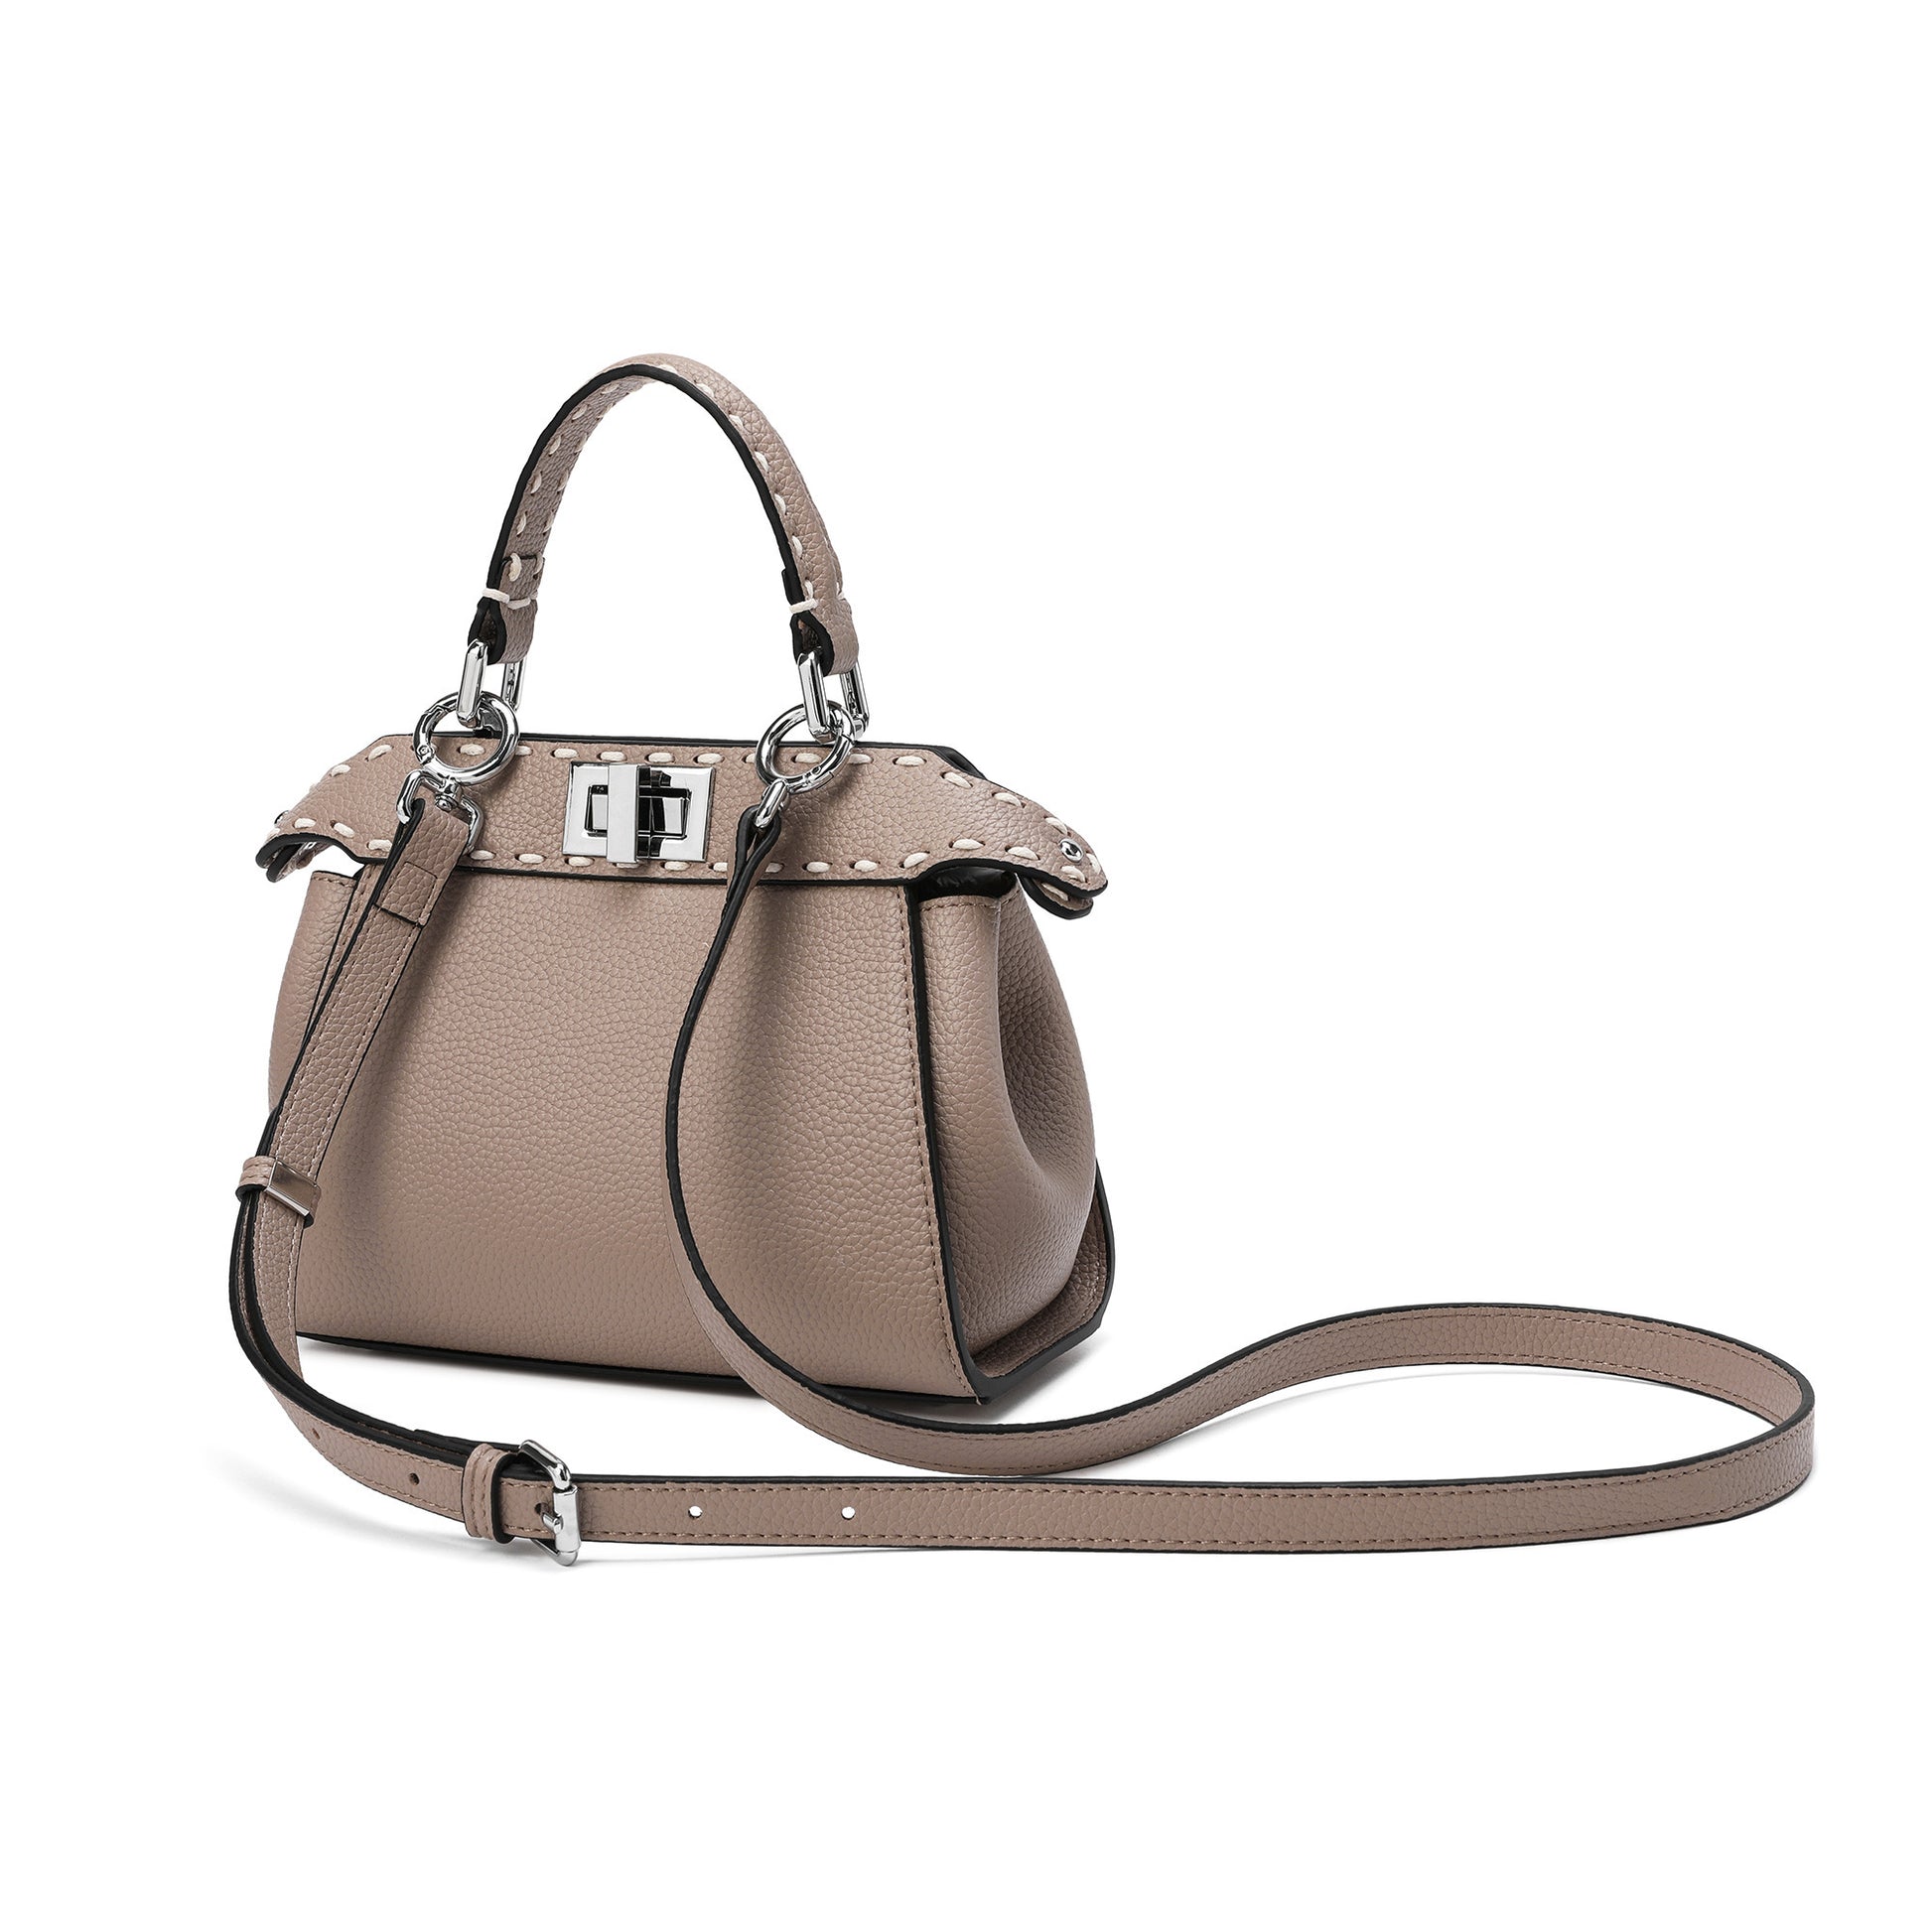 Tiffany & Fred Smooth Leather Foldover Crossbody/Shoulder Bag – Tiffany &  Fred Paris